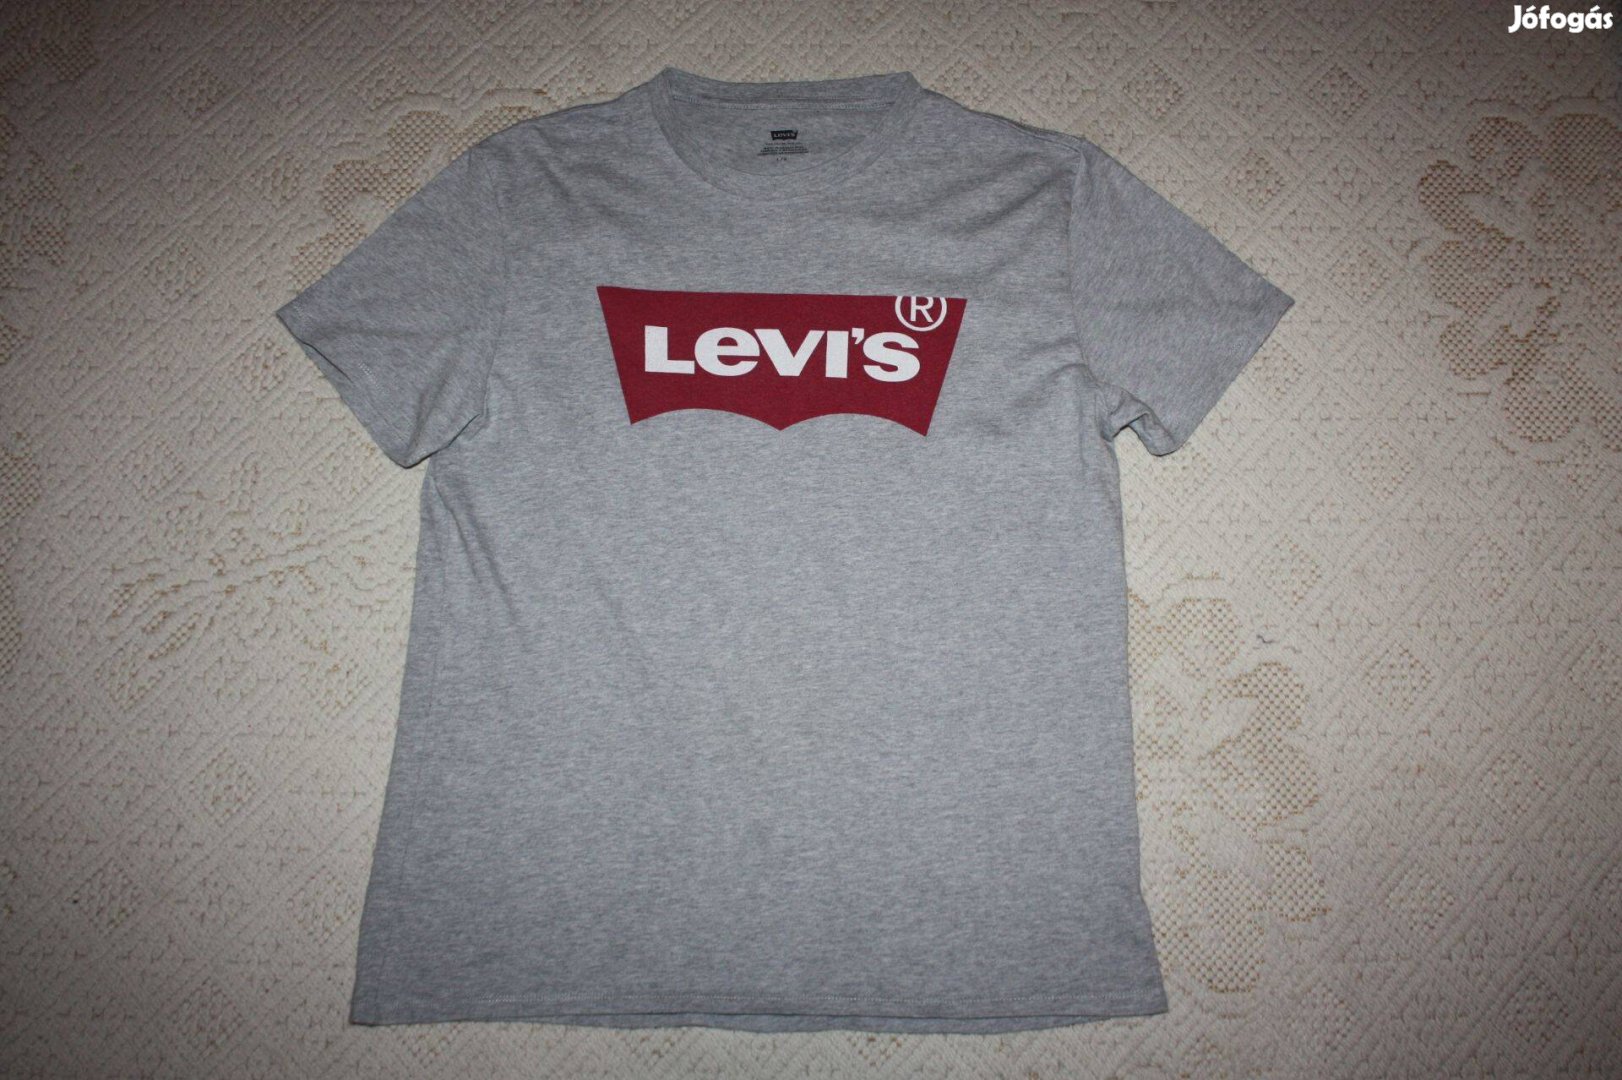 Levi's - Levis pamut póló L-es eredeti, megkímélt, szép